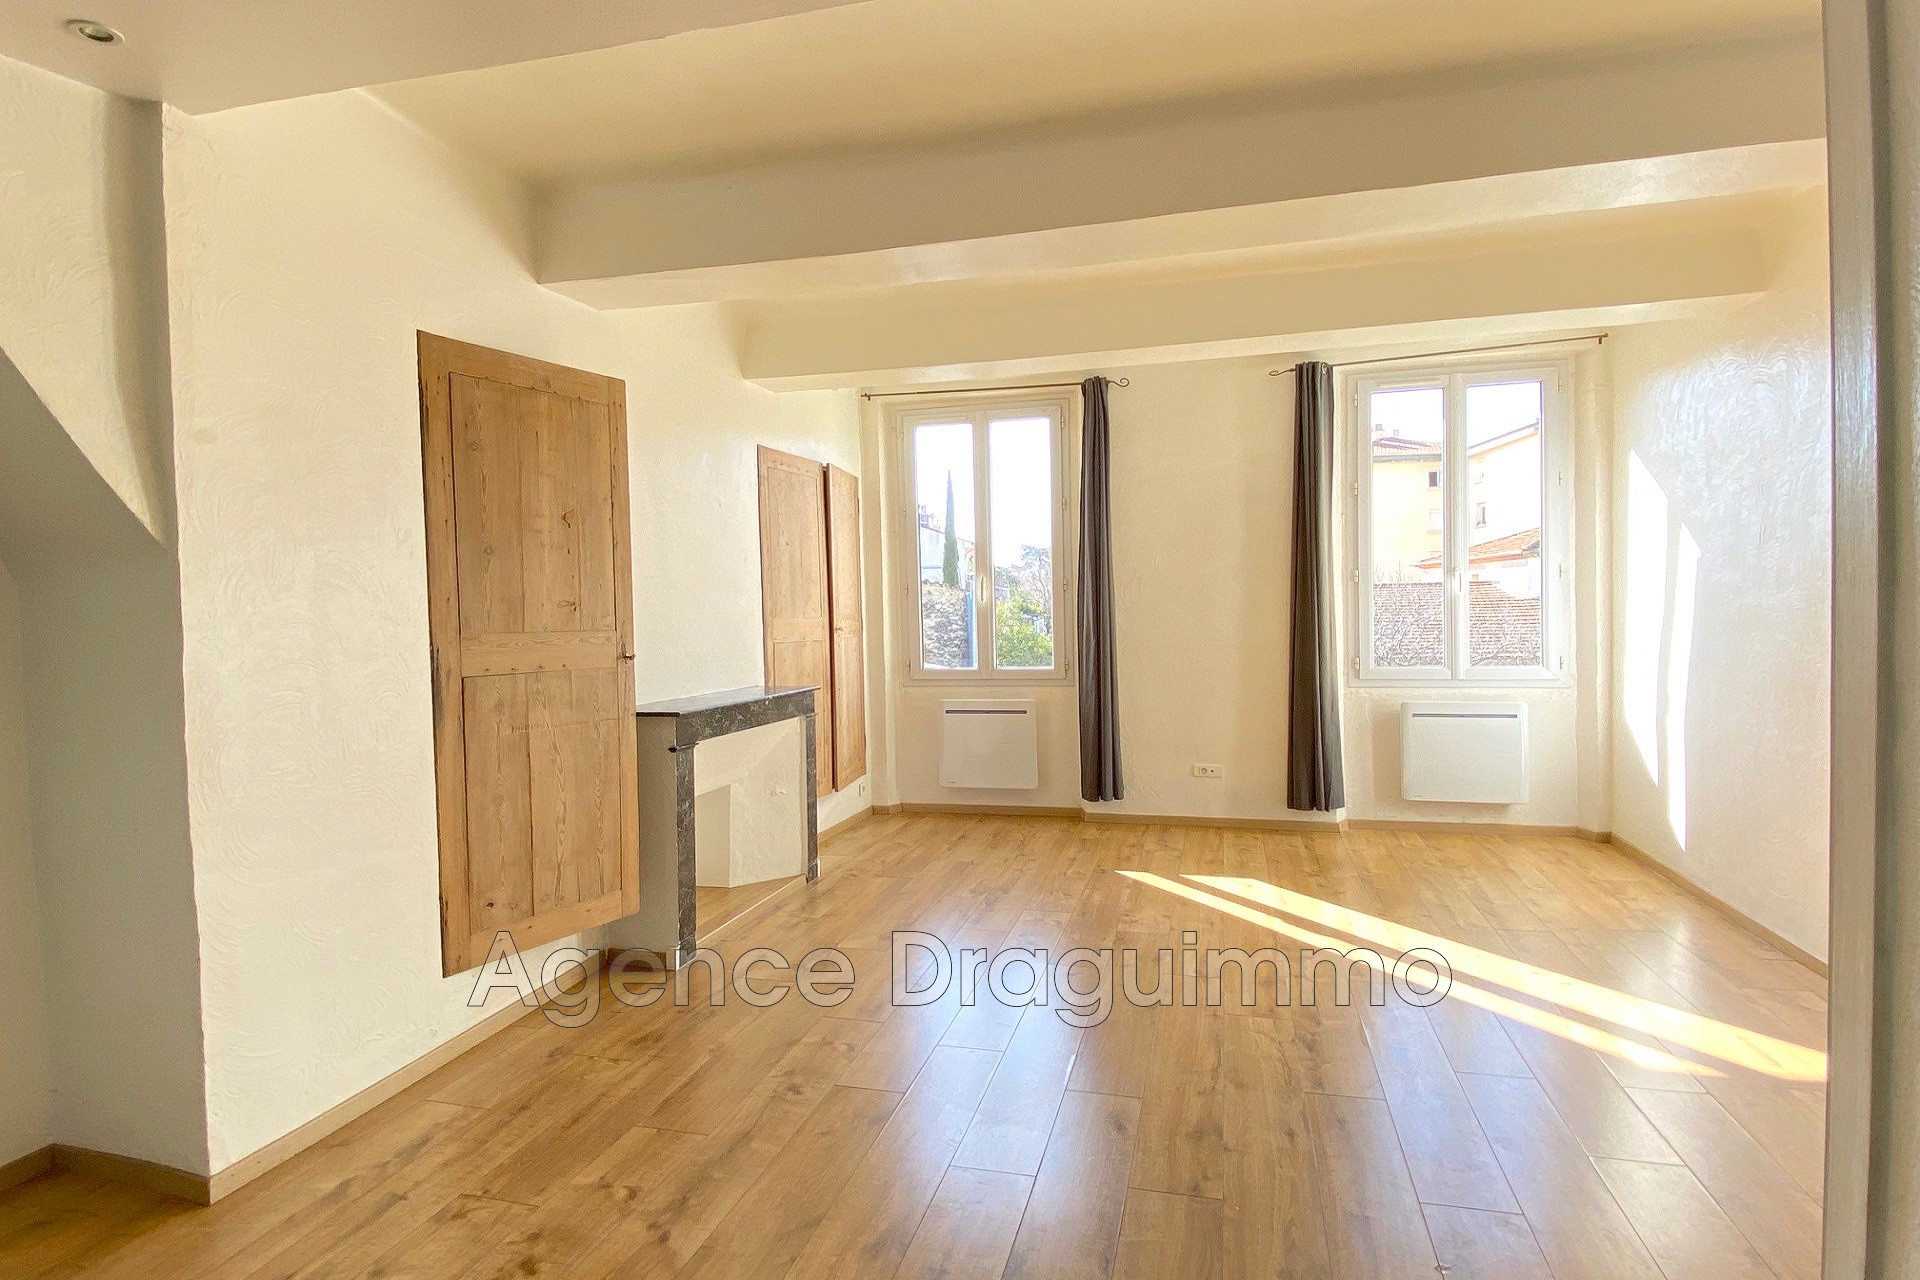 Vente Appartement 82m² 3 Pièces à Draguignan (83300) - Agence Draguimmo